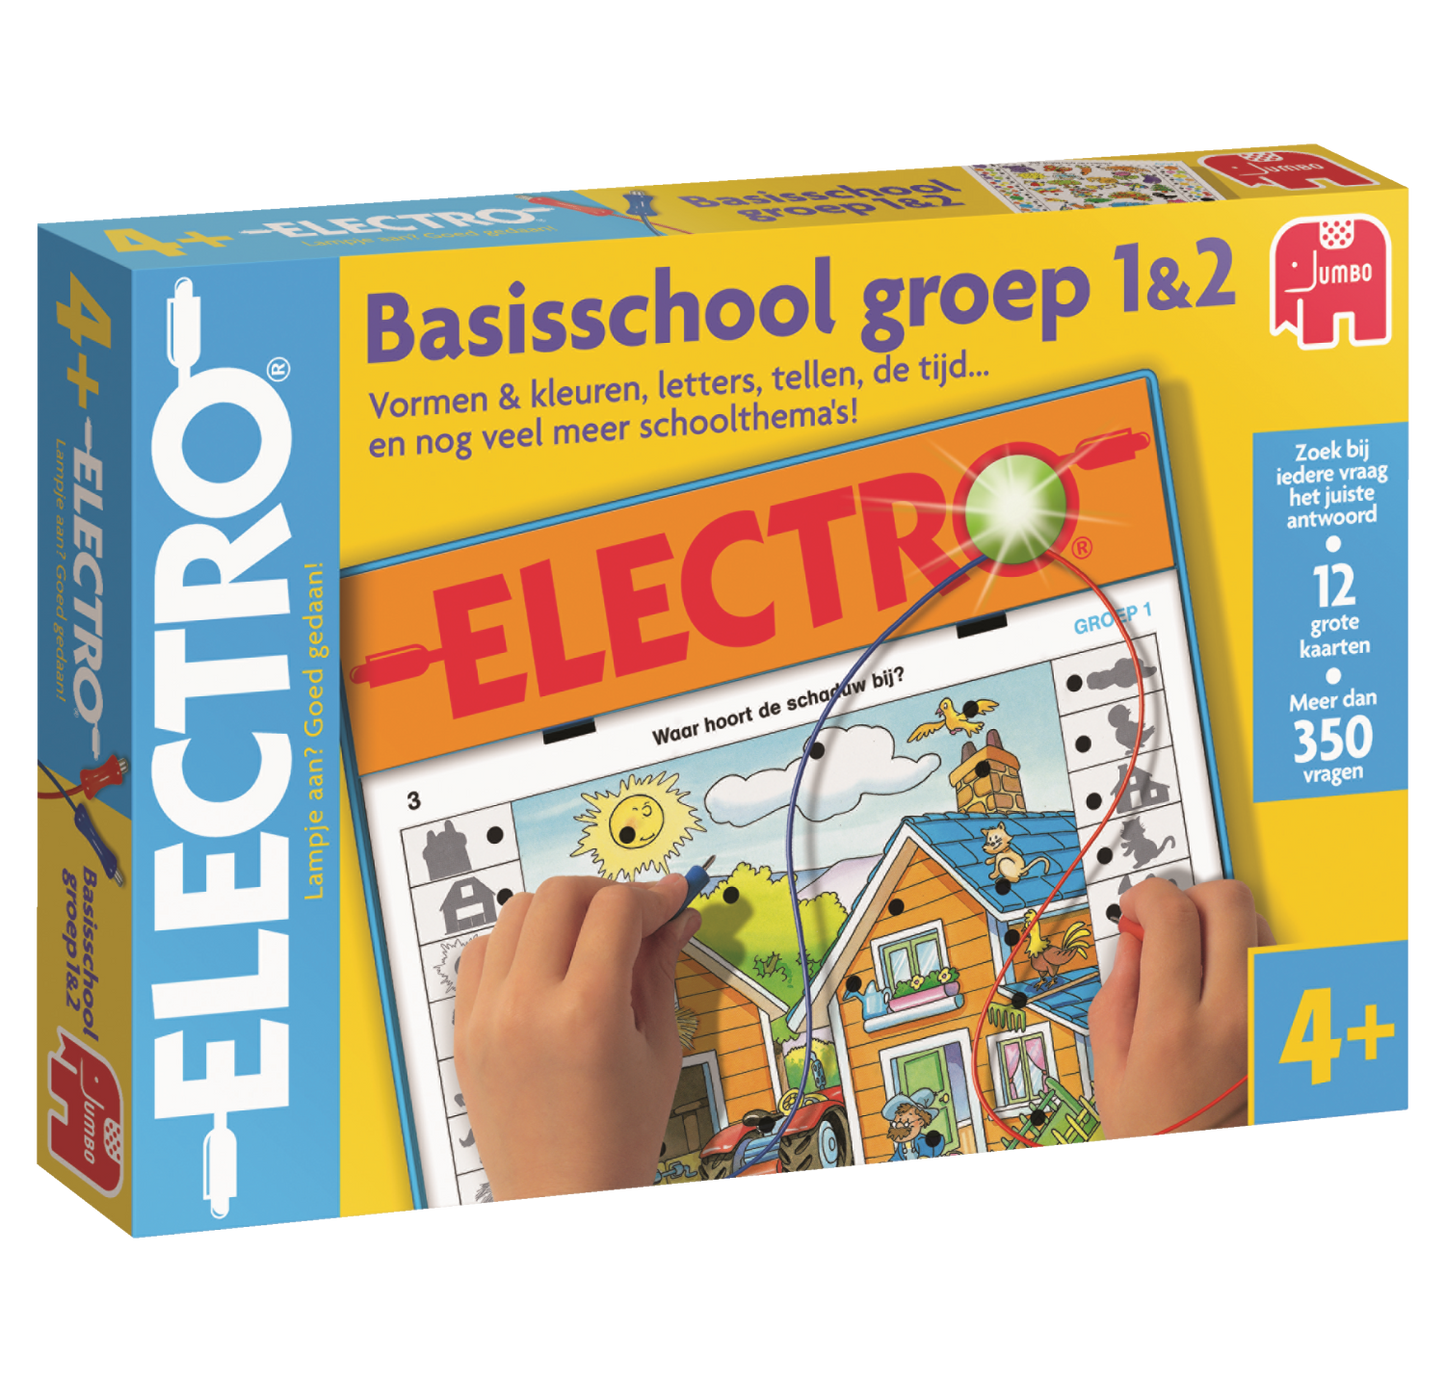 Electro Basisschool groep 1&2 NL - product image - Jumboplay.com